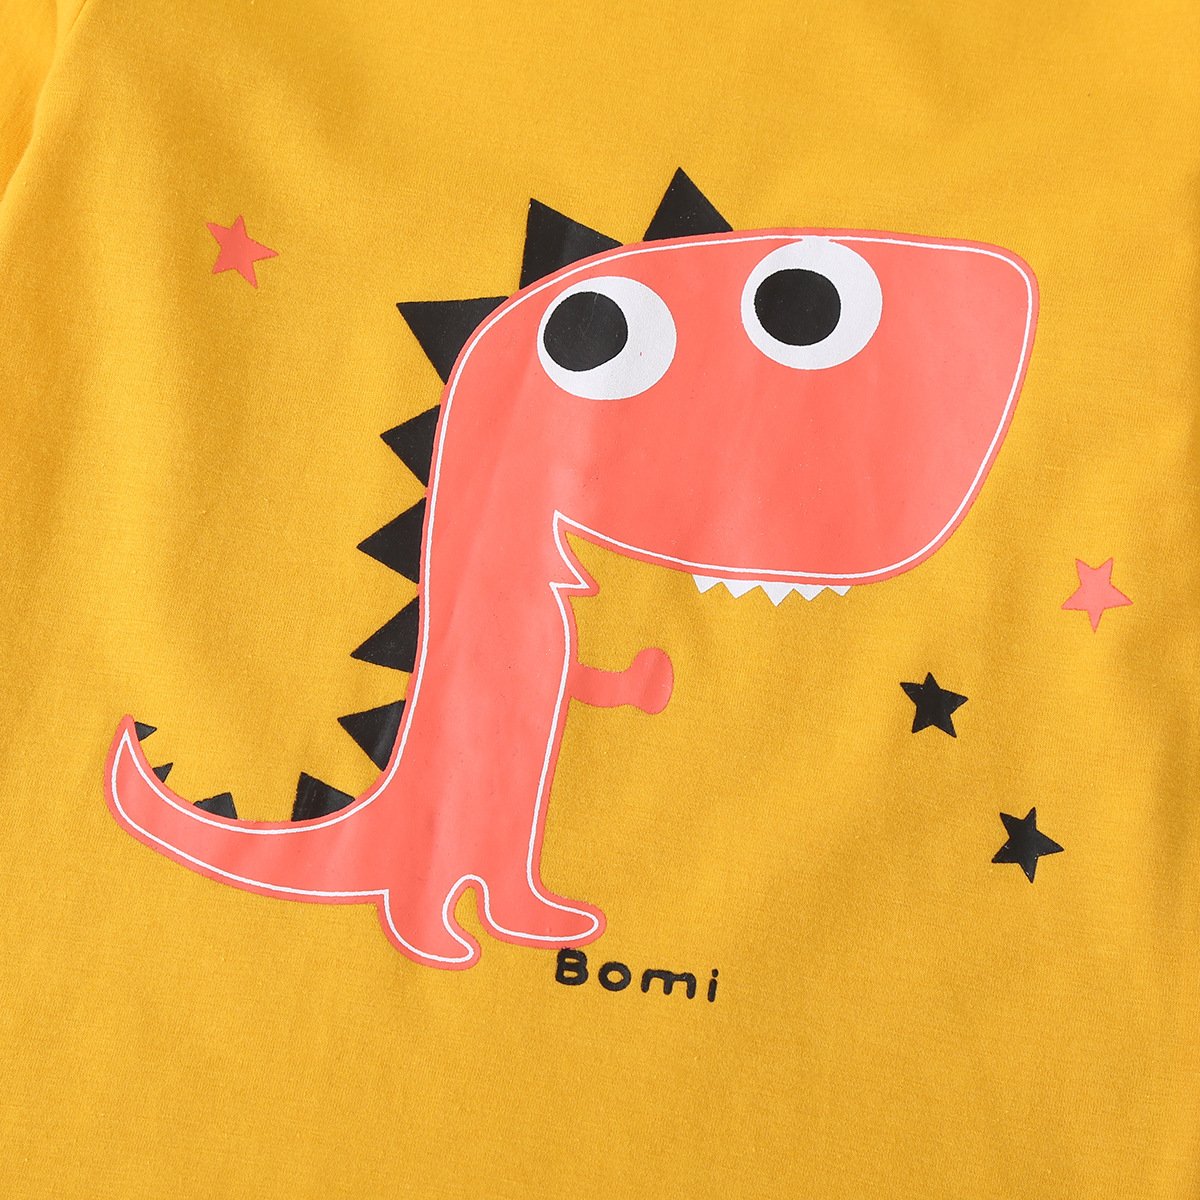 Boys Dinosaur Cartoon Printed Long Sleeve Top & Pants trendy kids wholesale clothing